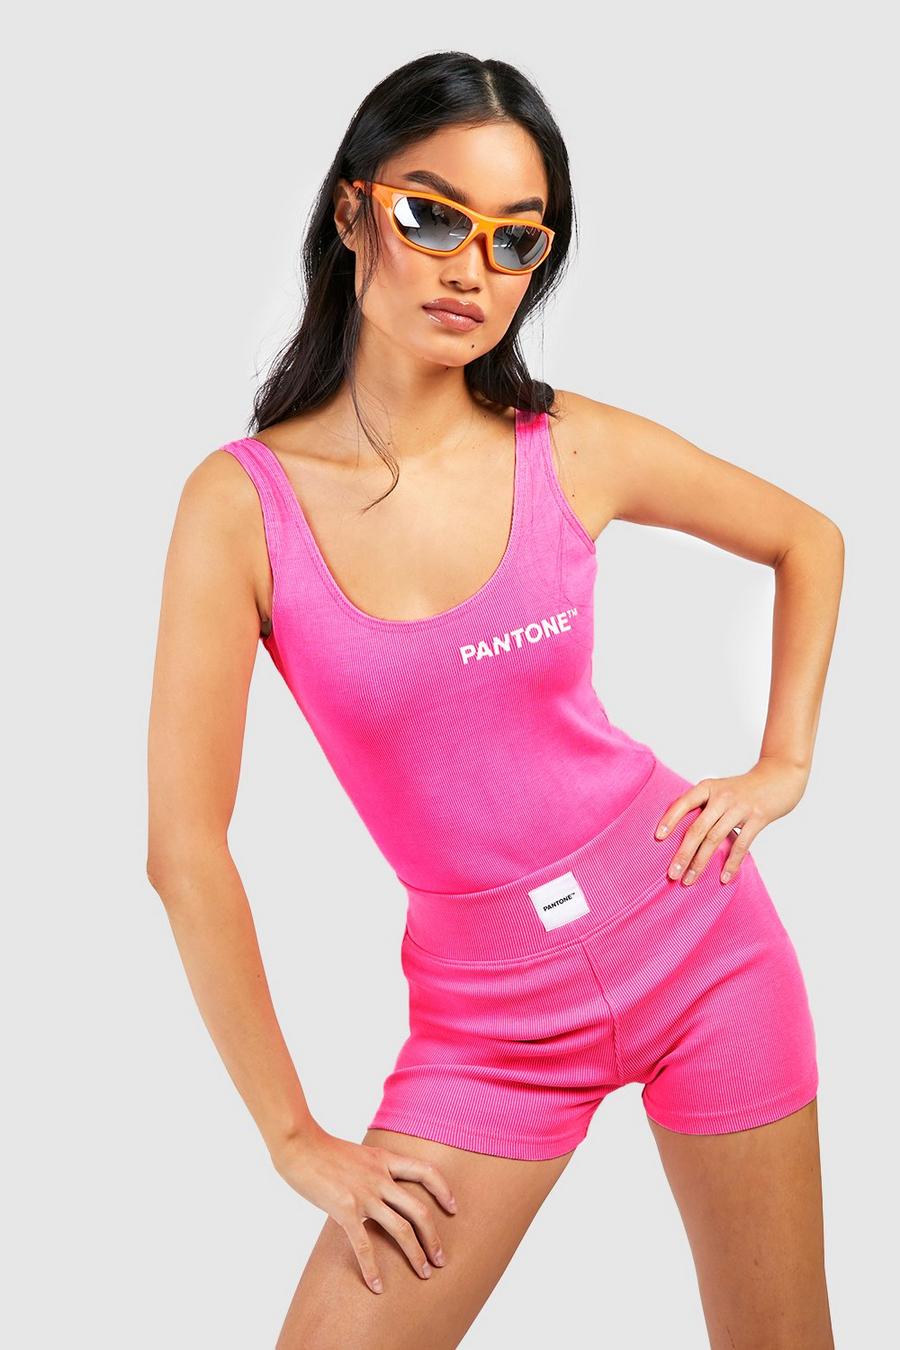 Pantone gerippte Booty-Shorts, Neon-pink rose